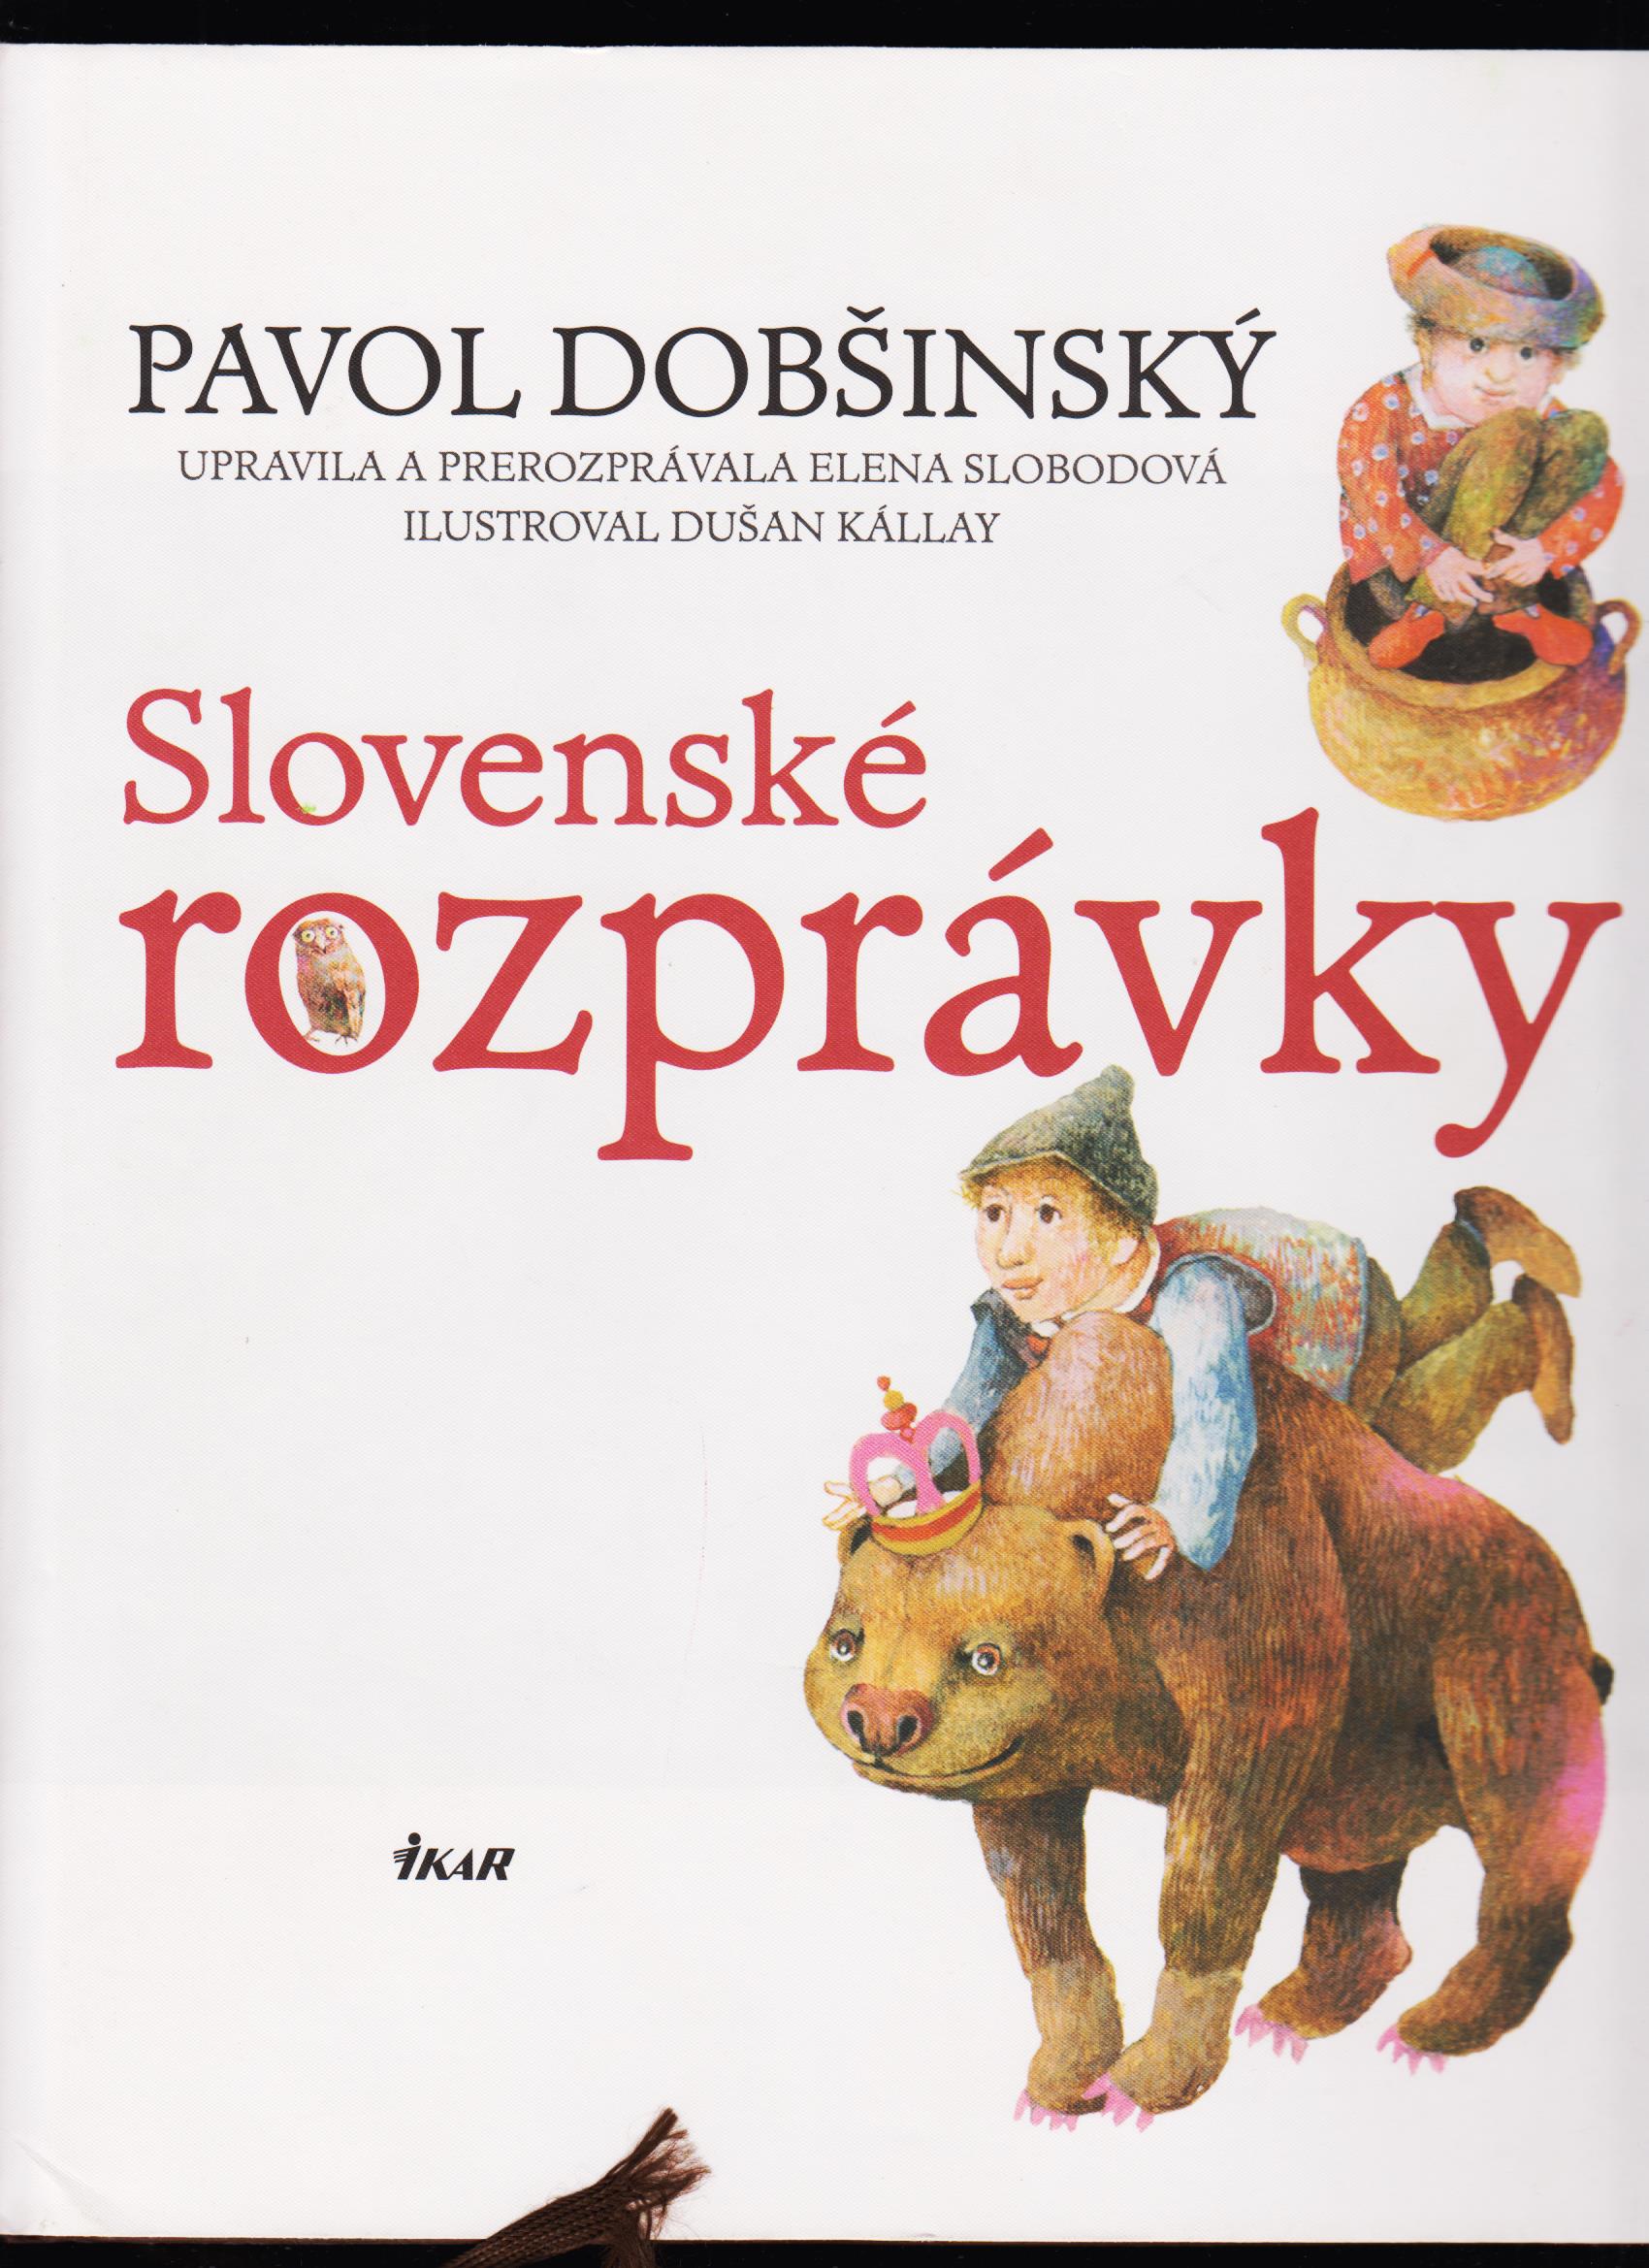 Pavol Dobšinský: Slovenské rozprávky /il. Dušan Kállay/